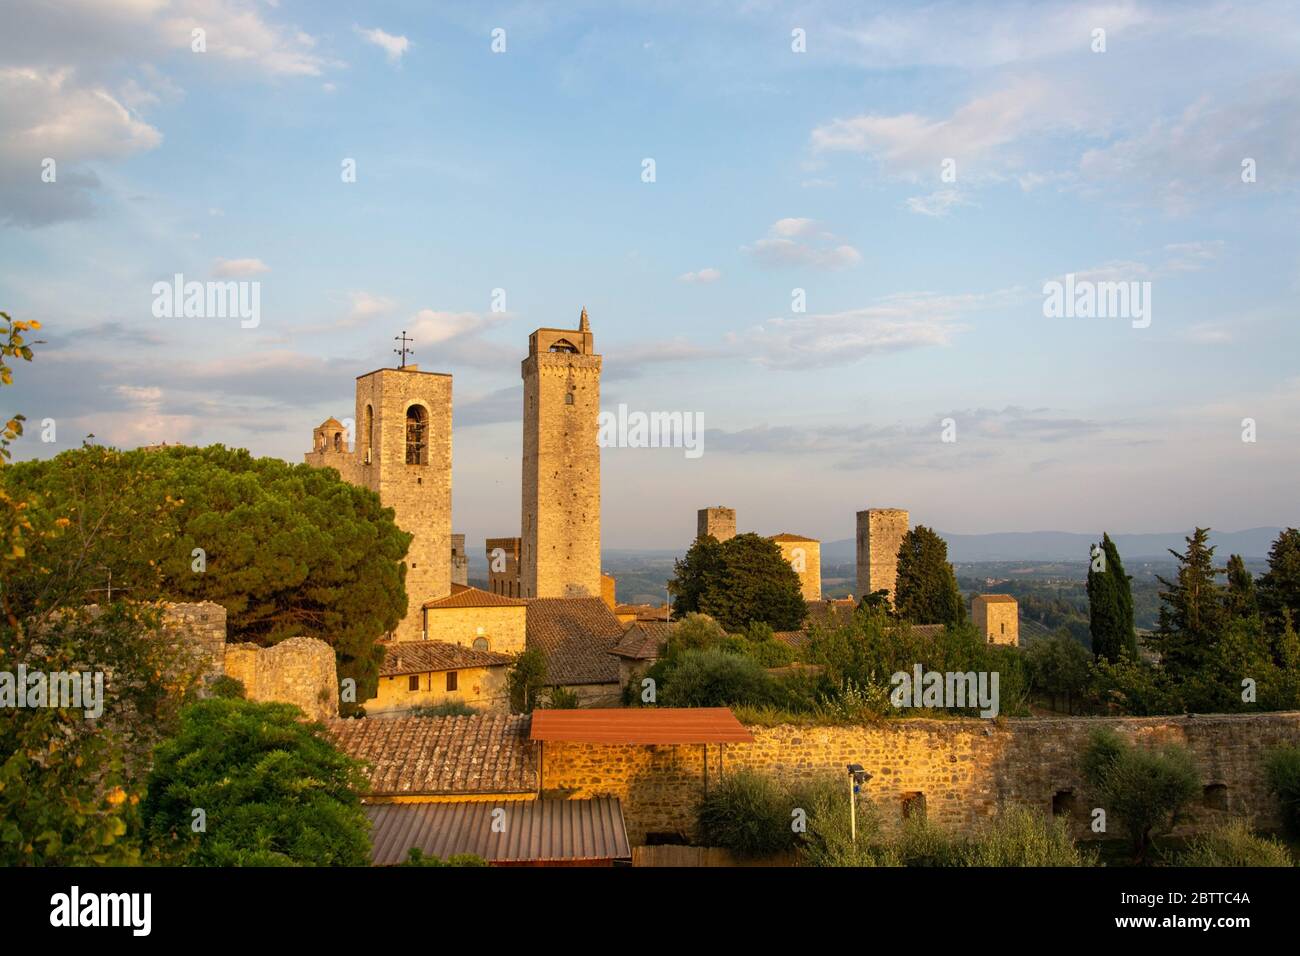 San Gimignano ist eine italienische Kleinstadt in der Provinz Siena, Toskana, mit einem mittelalterlichen Stadtkern und wird auch "Mittelalterliches M Foto de stock